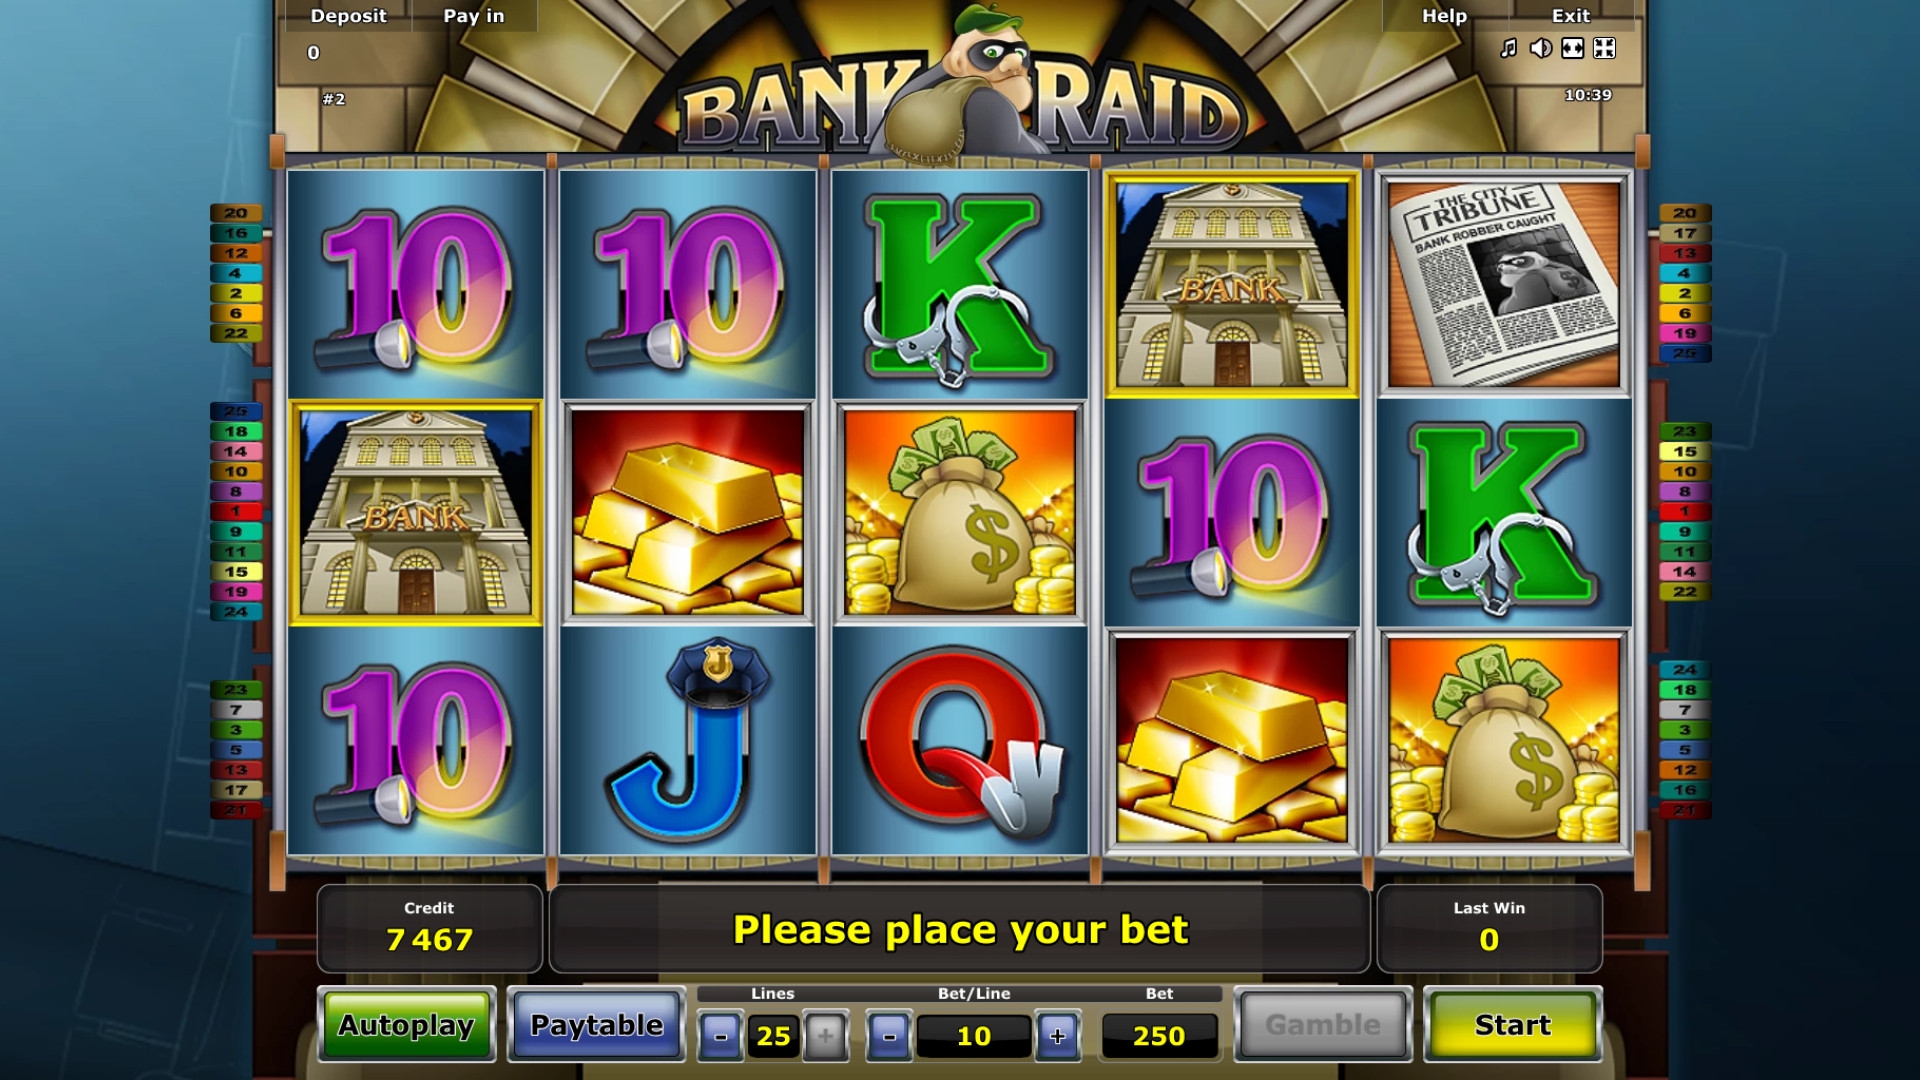 Kills Slot machines online bank raid :